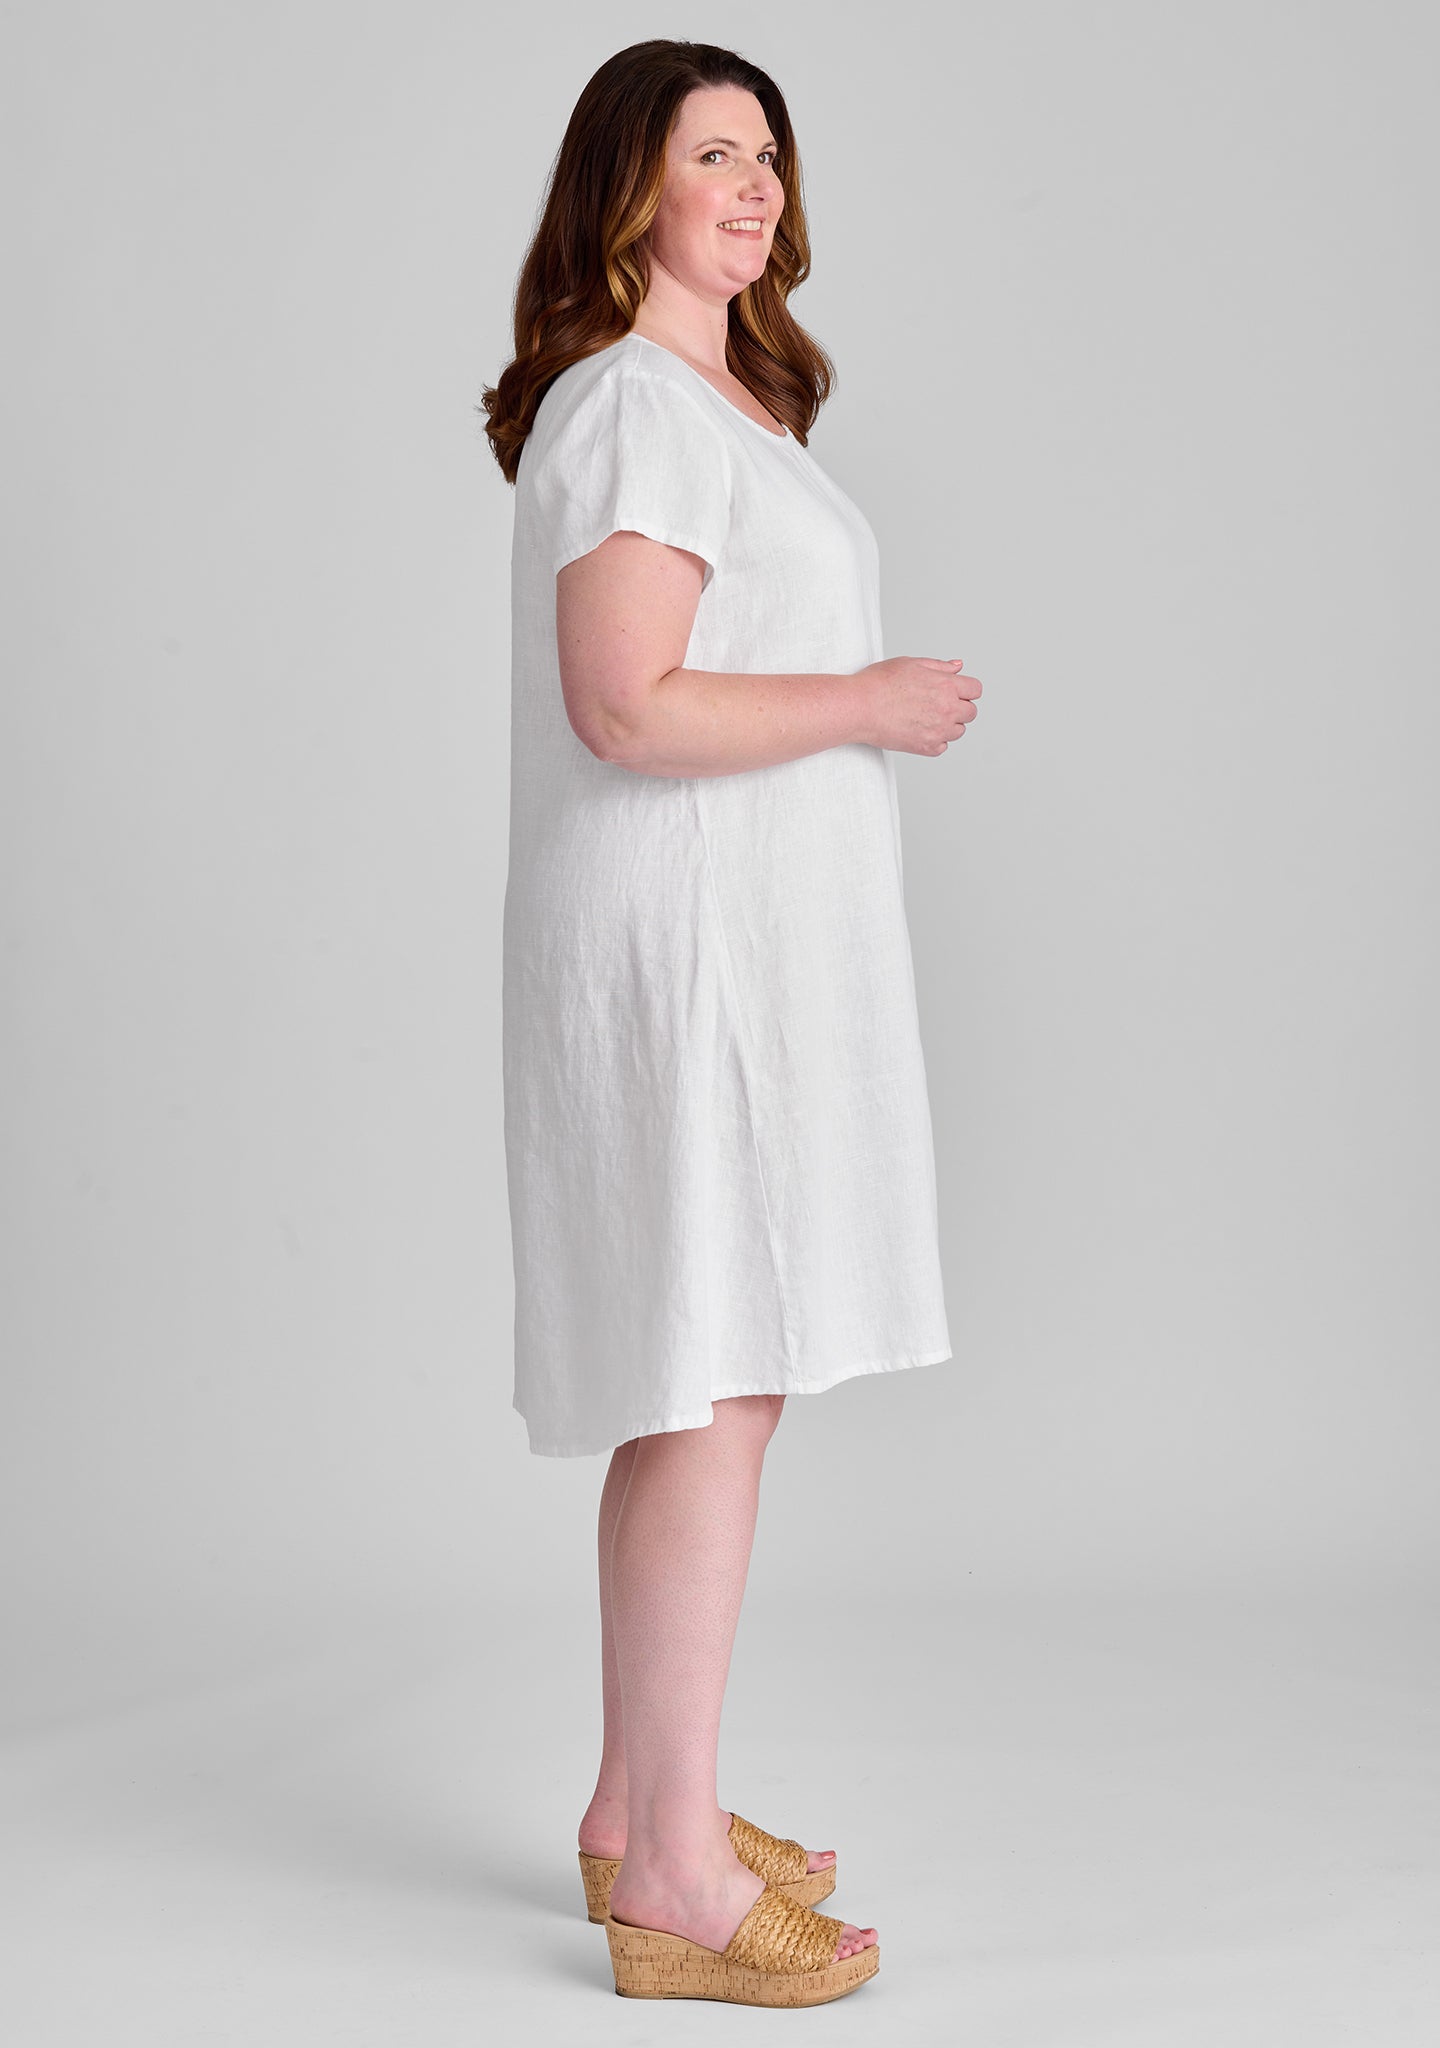 Simple Dress - Linen Shift Dress